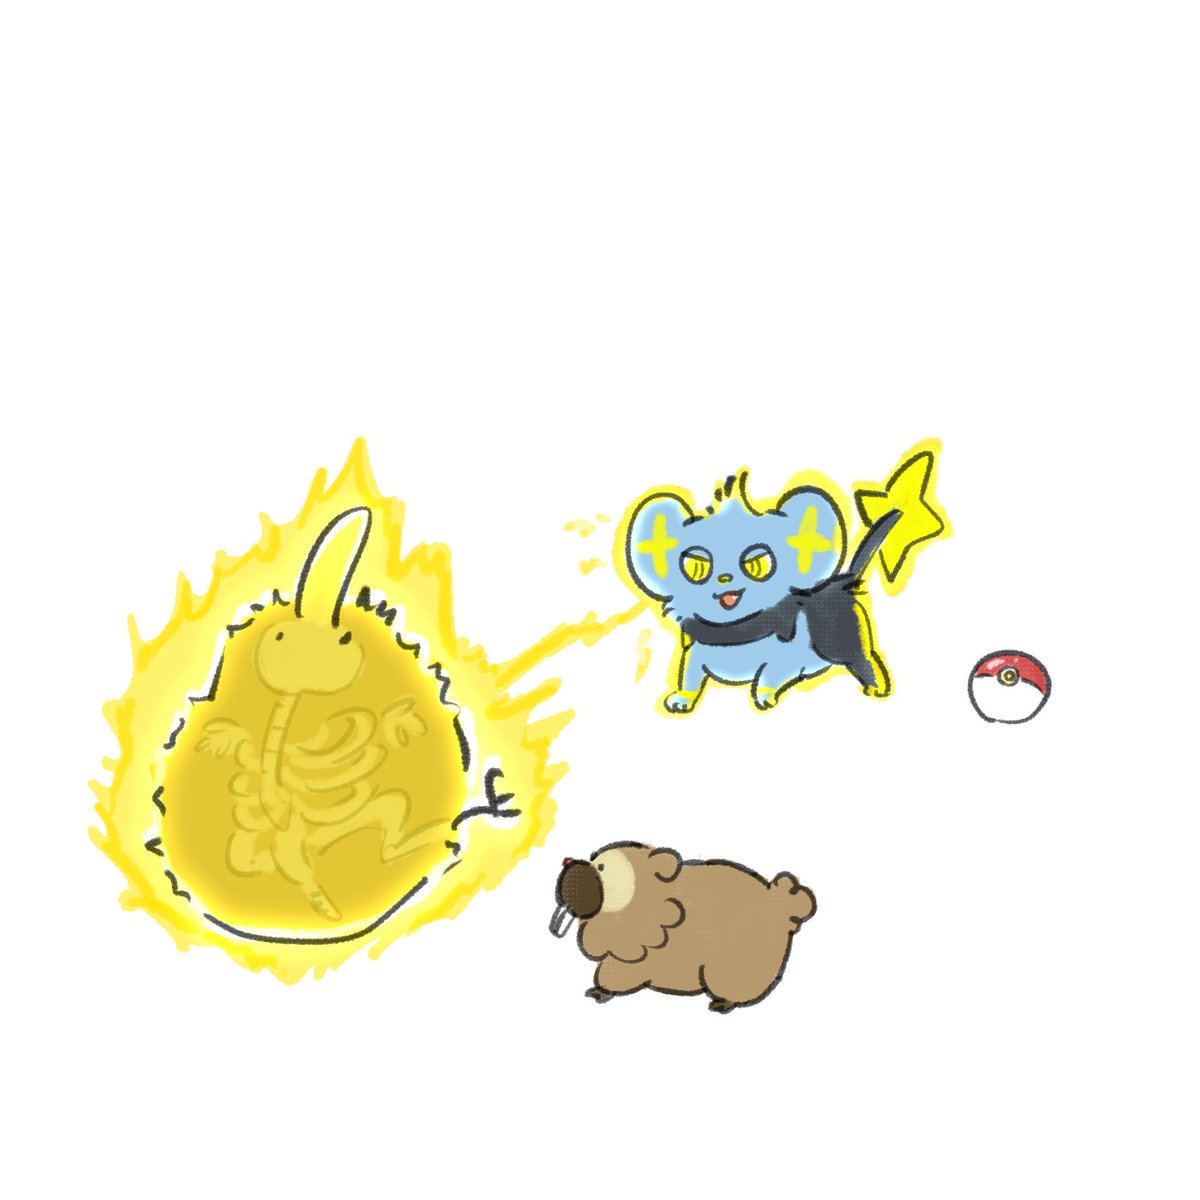 pokemon (creature) no humans poke ball white background electricity poke ball (basic) simple background  illustration images